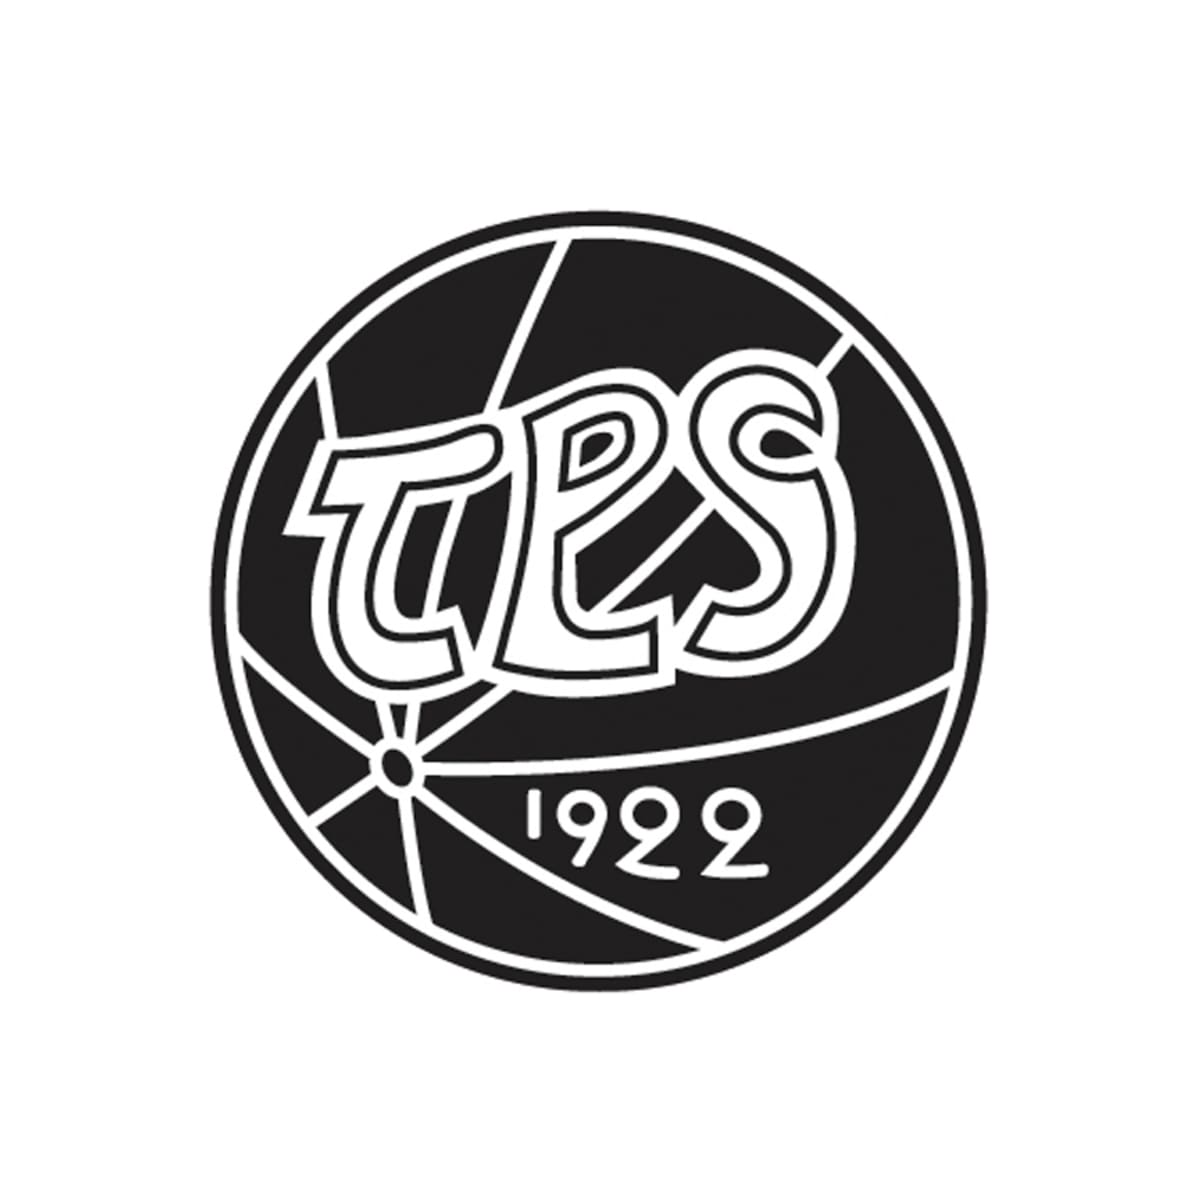 TPS logo.